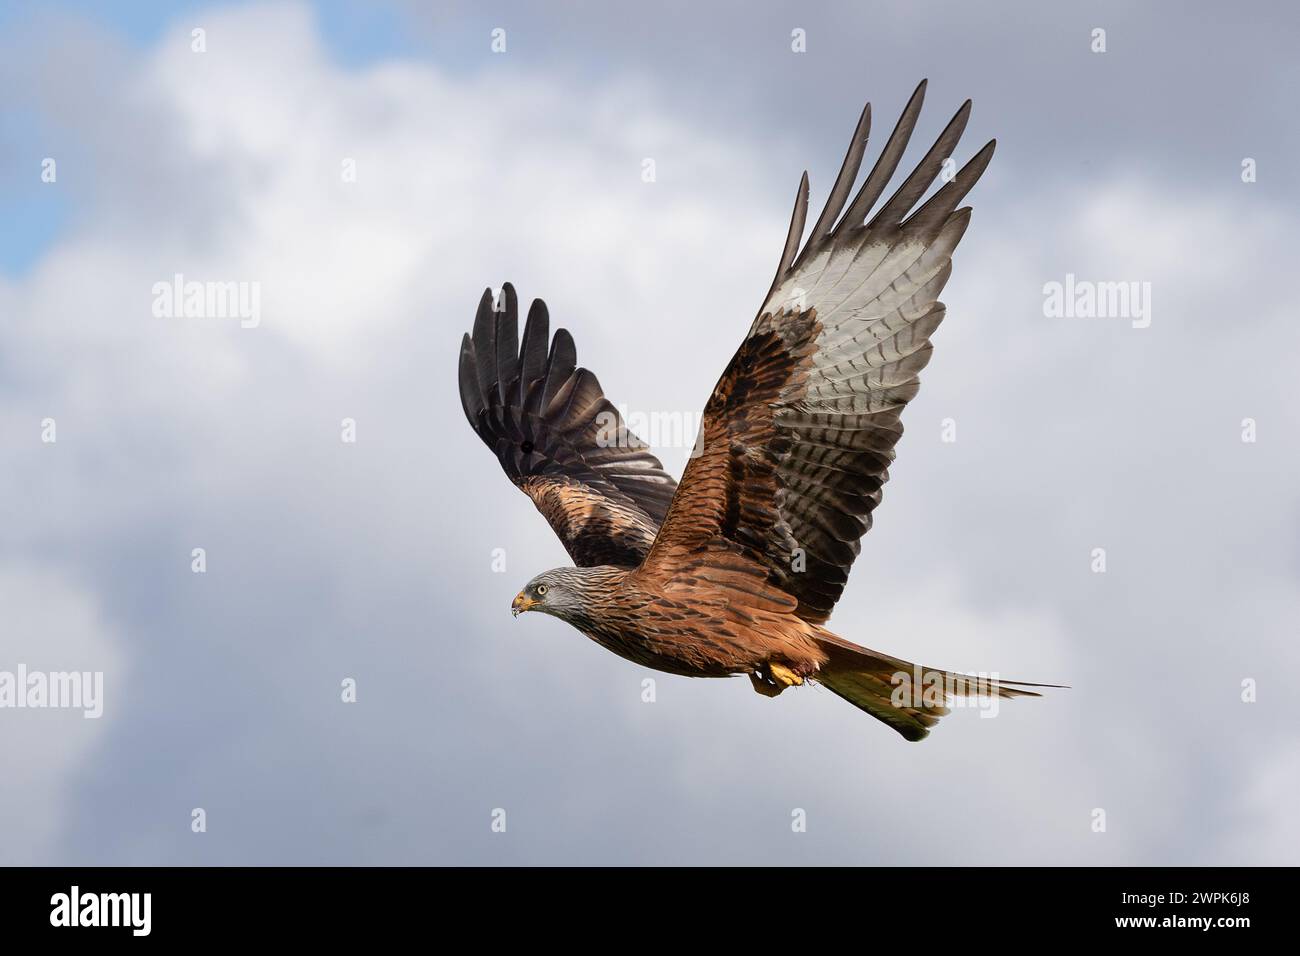 Catturato in volo con le ali in posizione eretta è un aquilone rosso, Milvus milvus. C'è spazio per il testo intorno e il soggetto ha uno sfondo di cielo nuvoloso Foto Stock